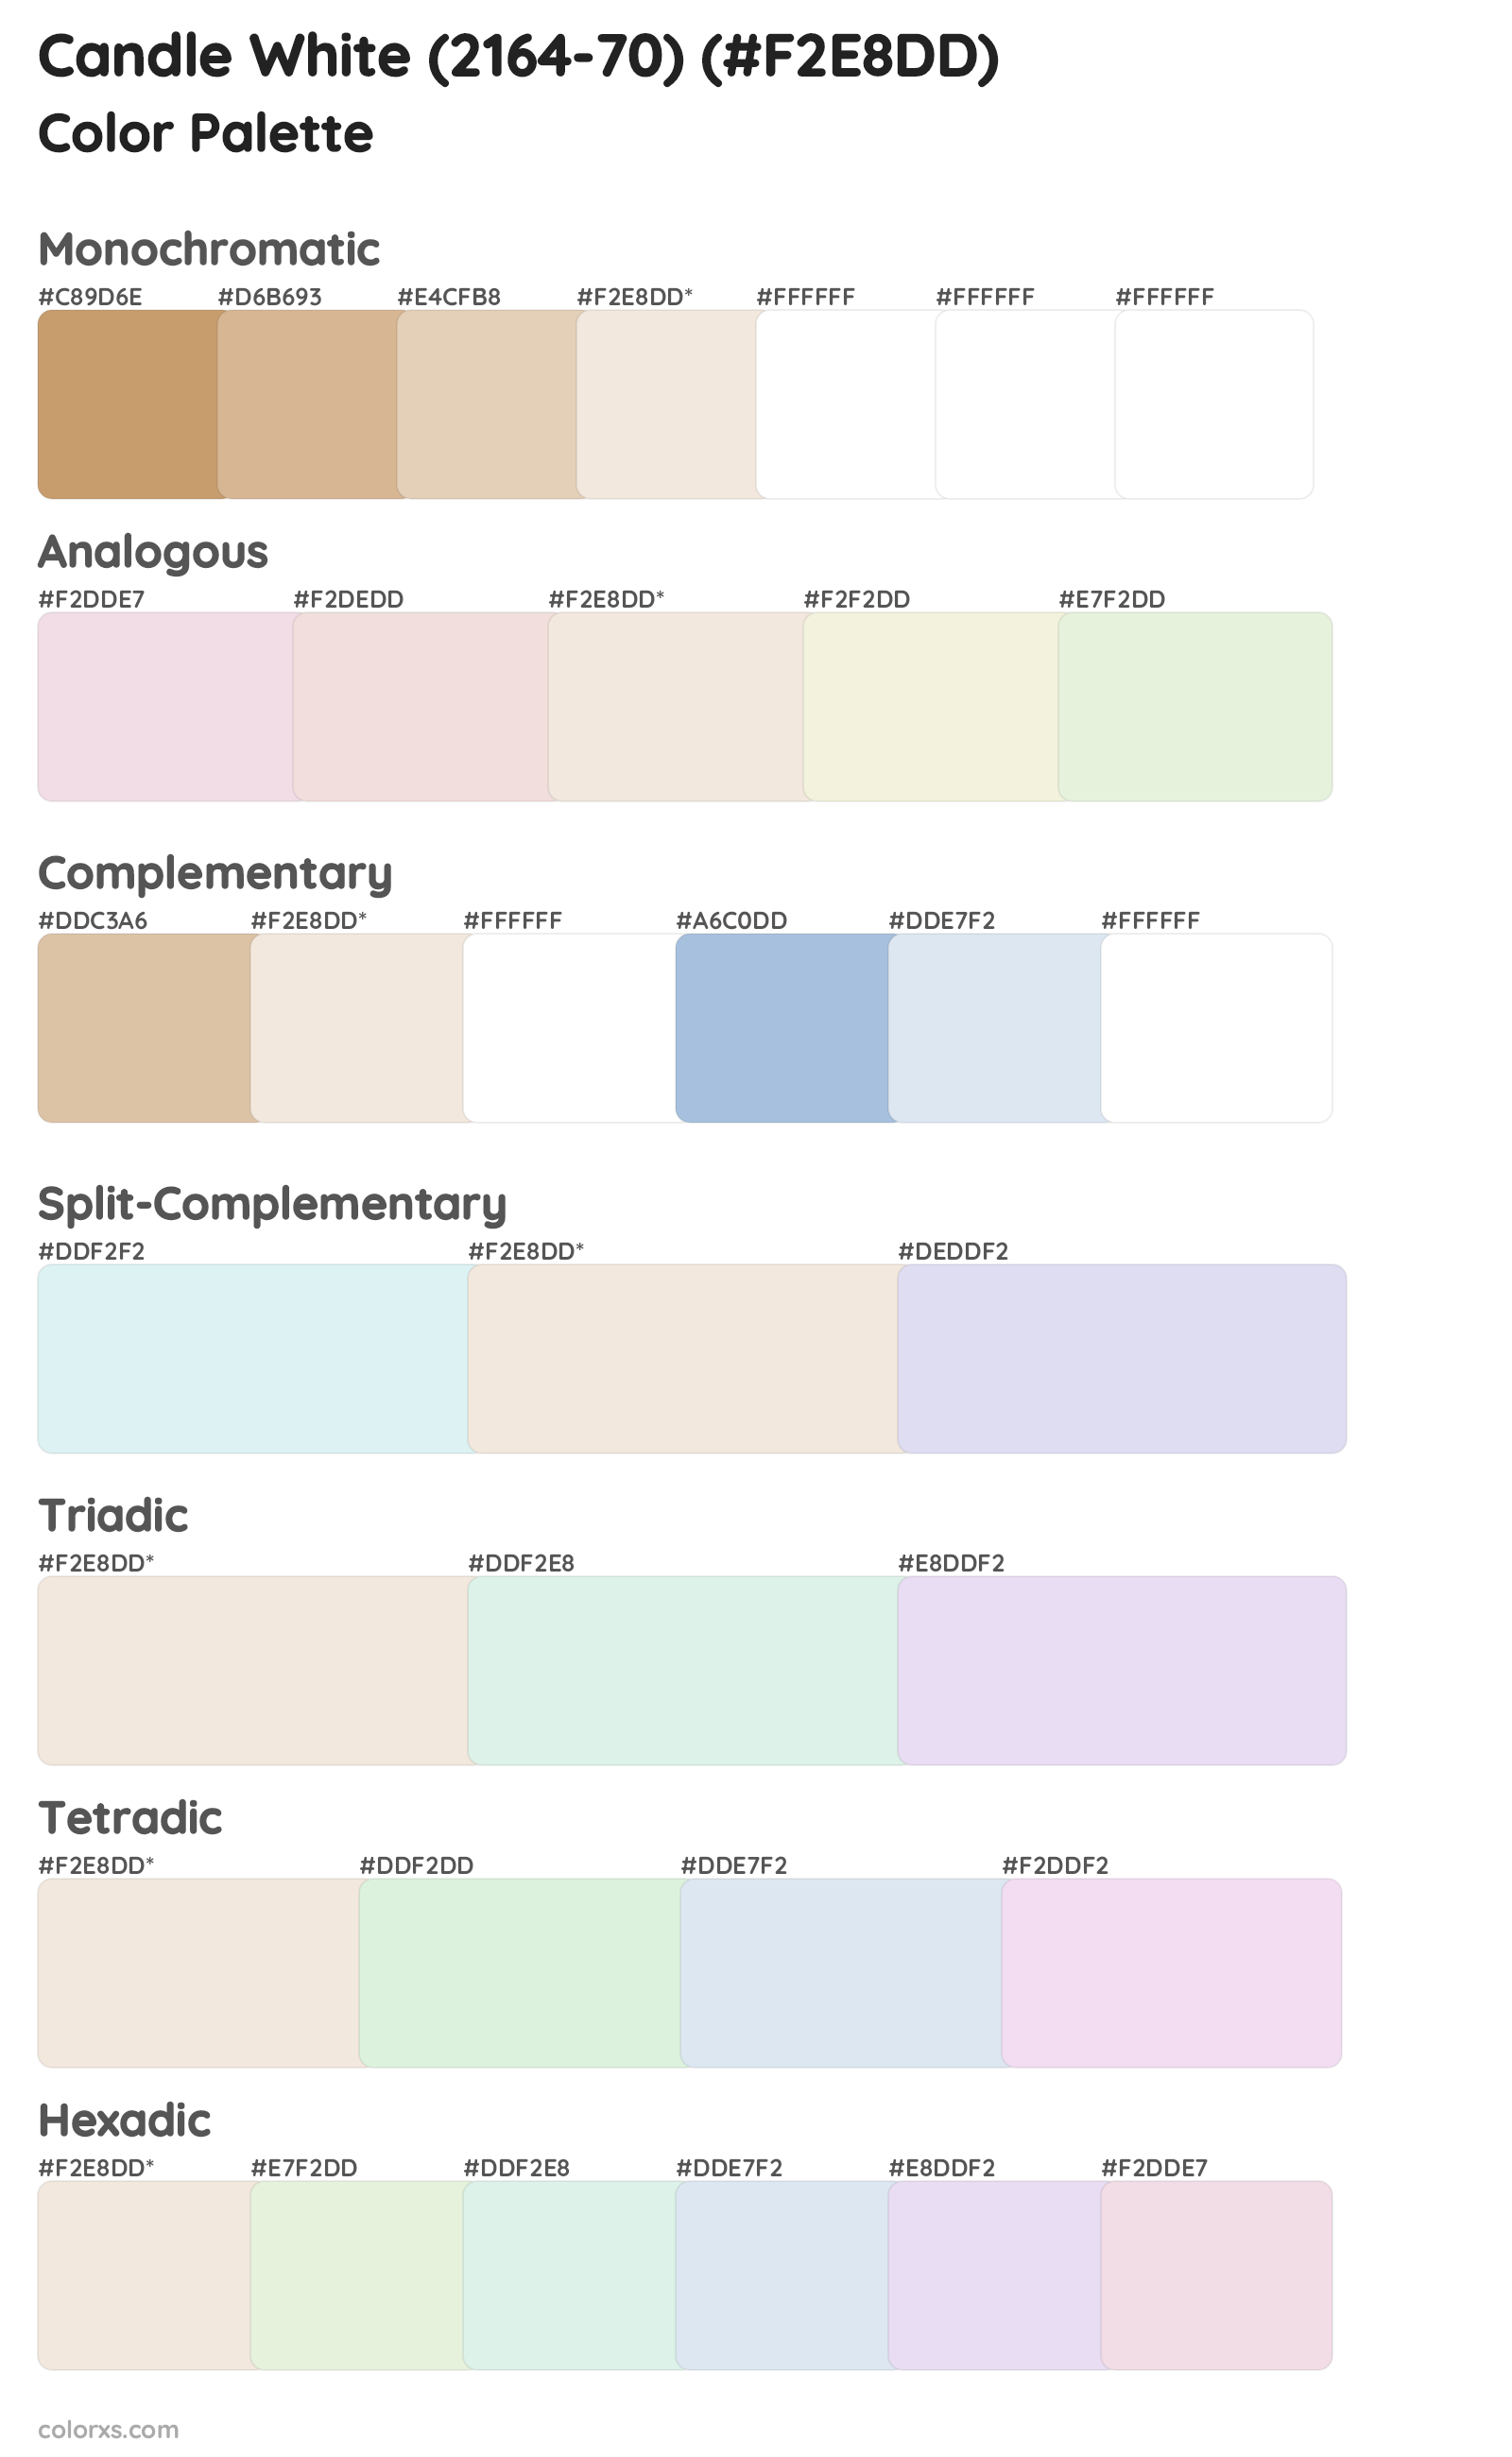 Candle White (2164-70) Color Scheme Palettes